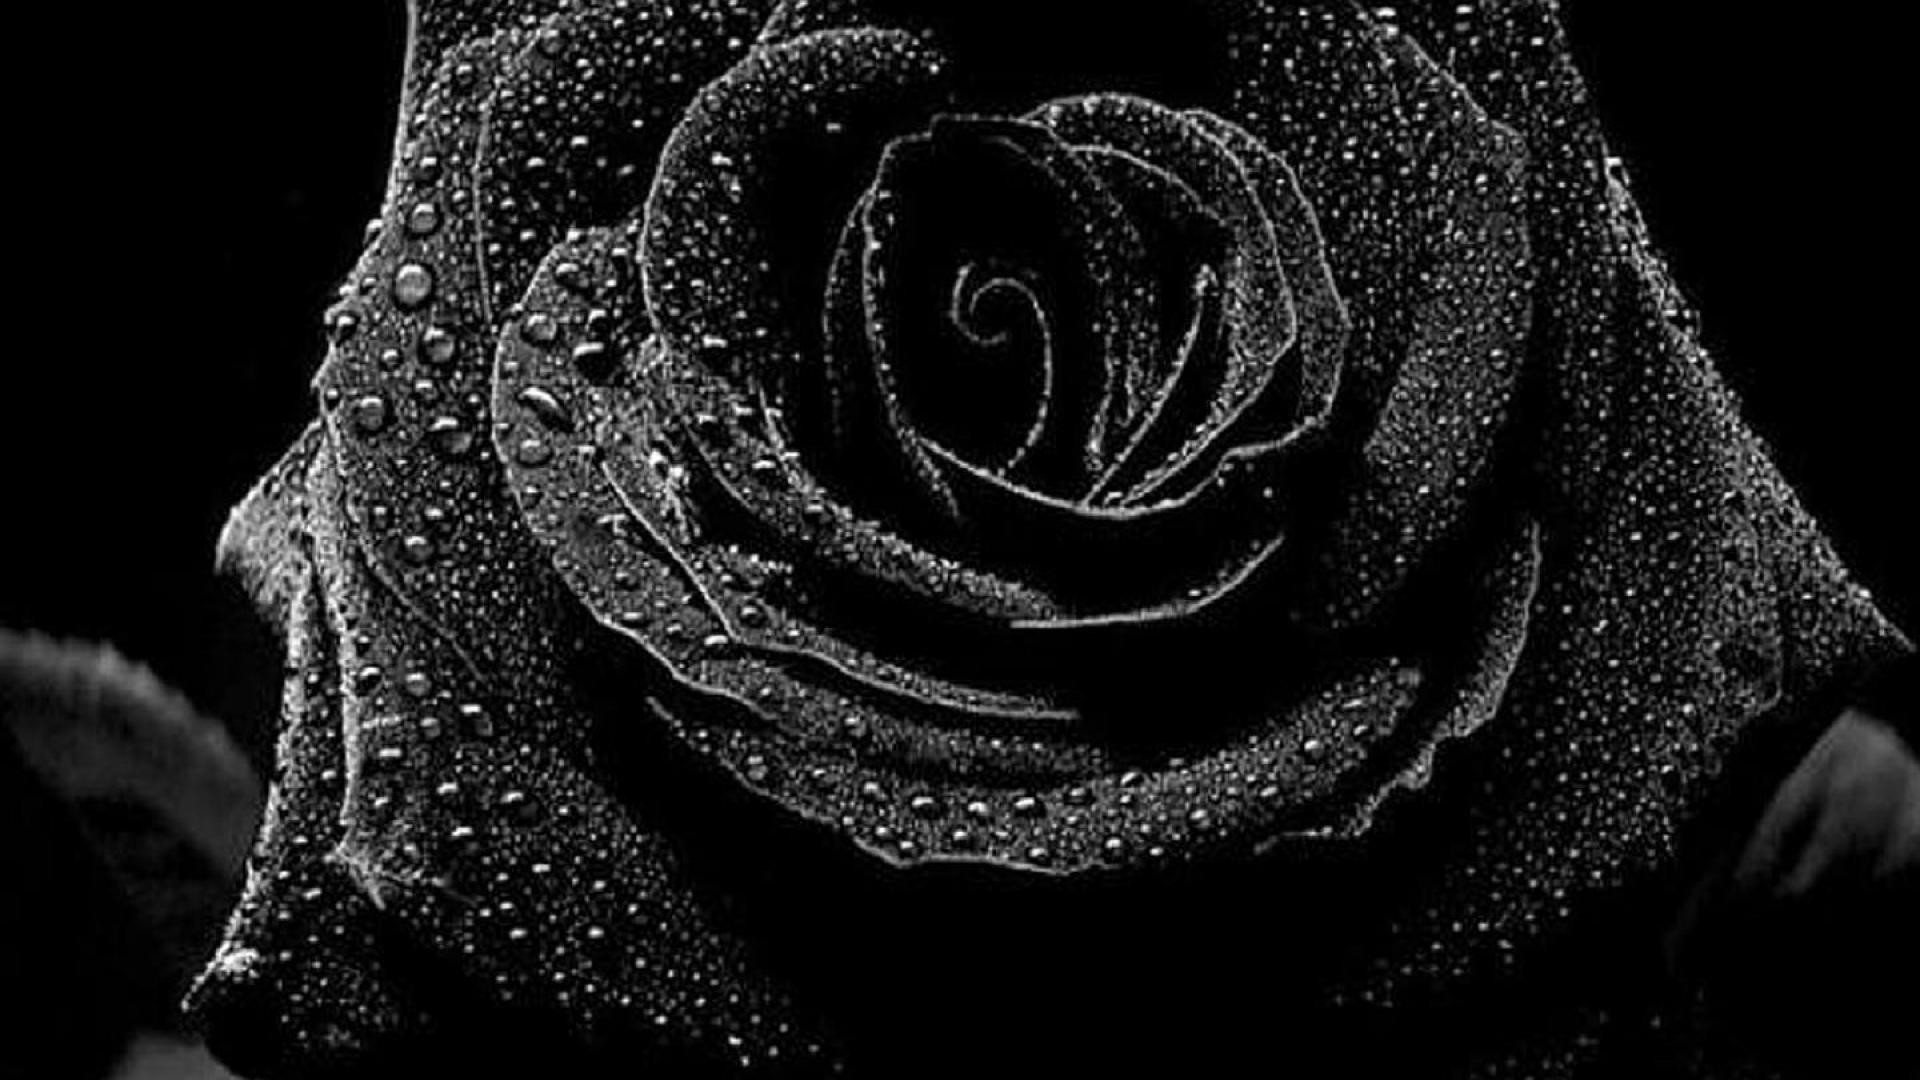 검은 색과 흰색 장미 벽지,검정,흑백 사진,검정색과 흰색,물,장미